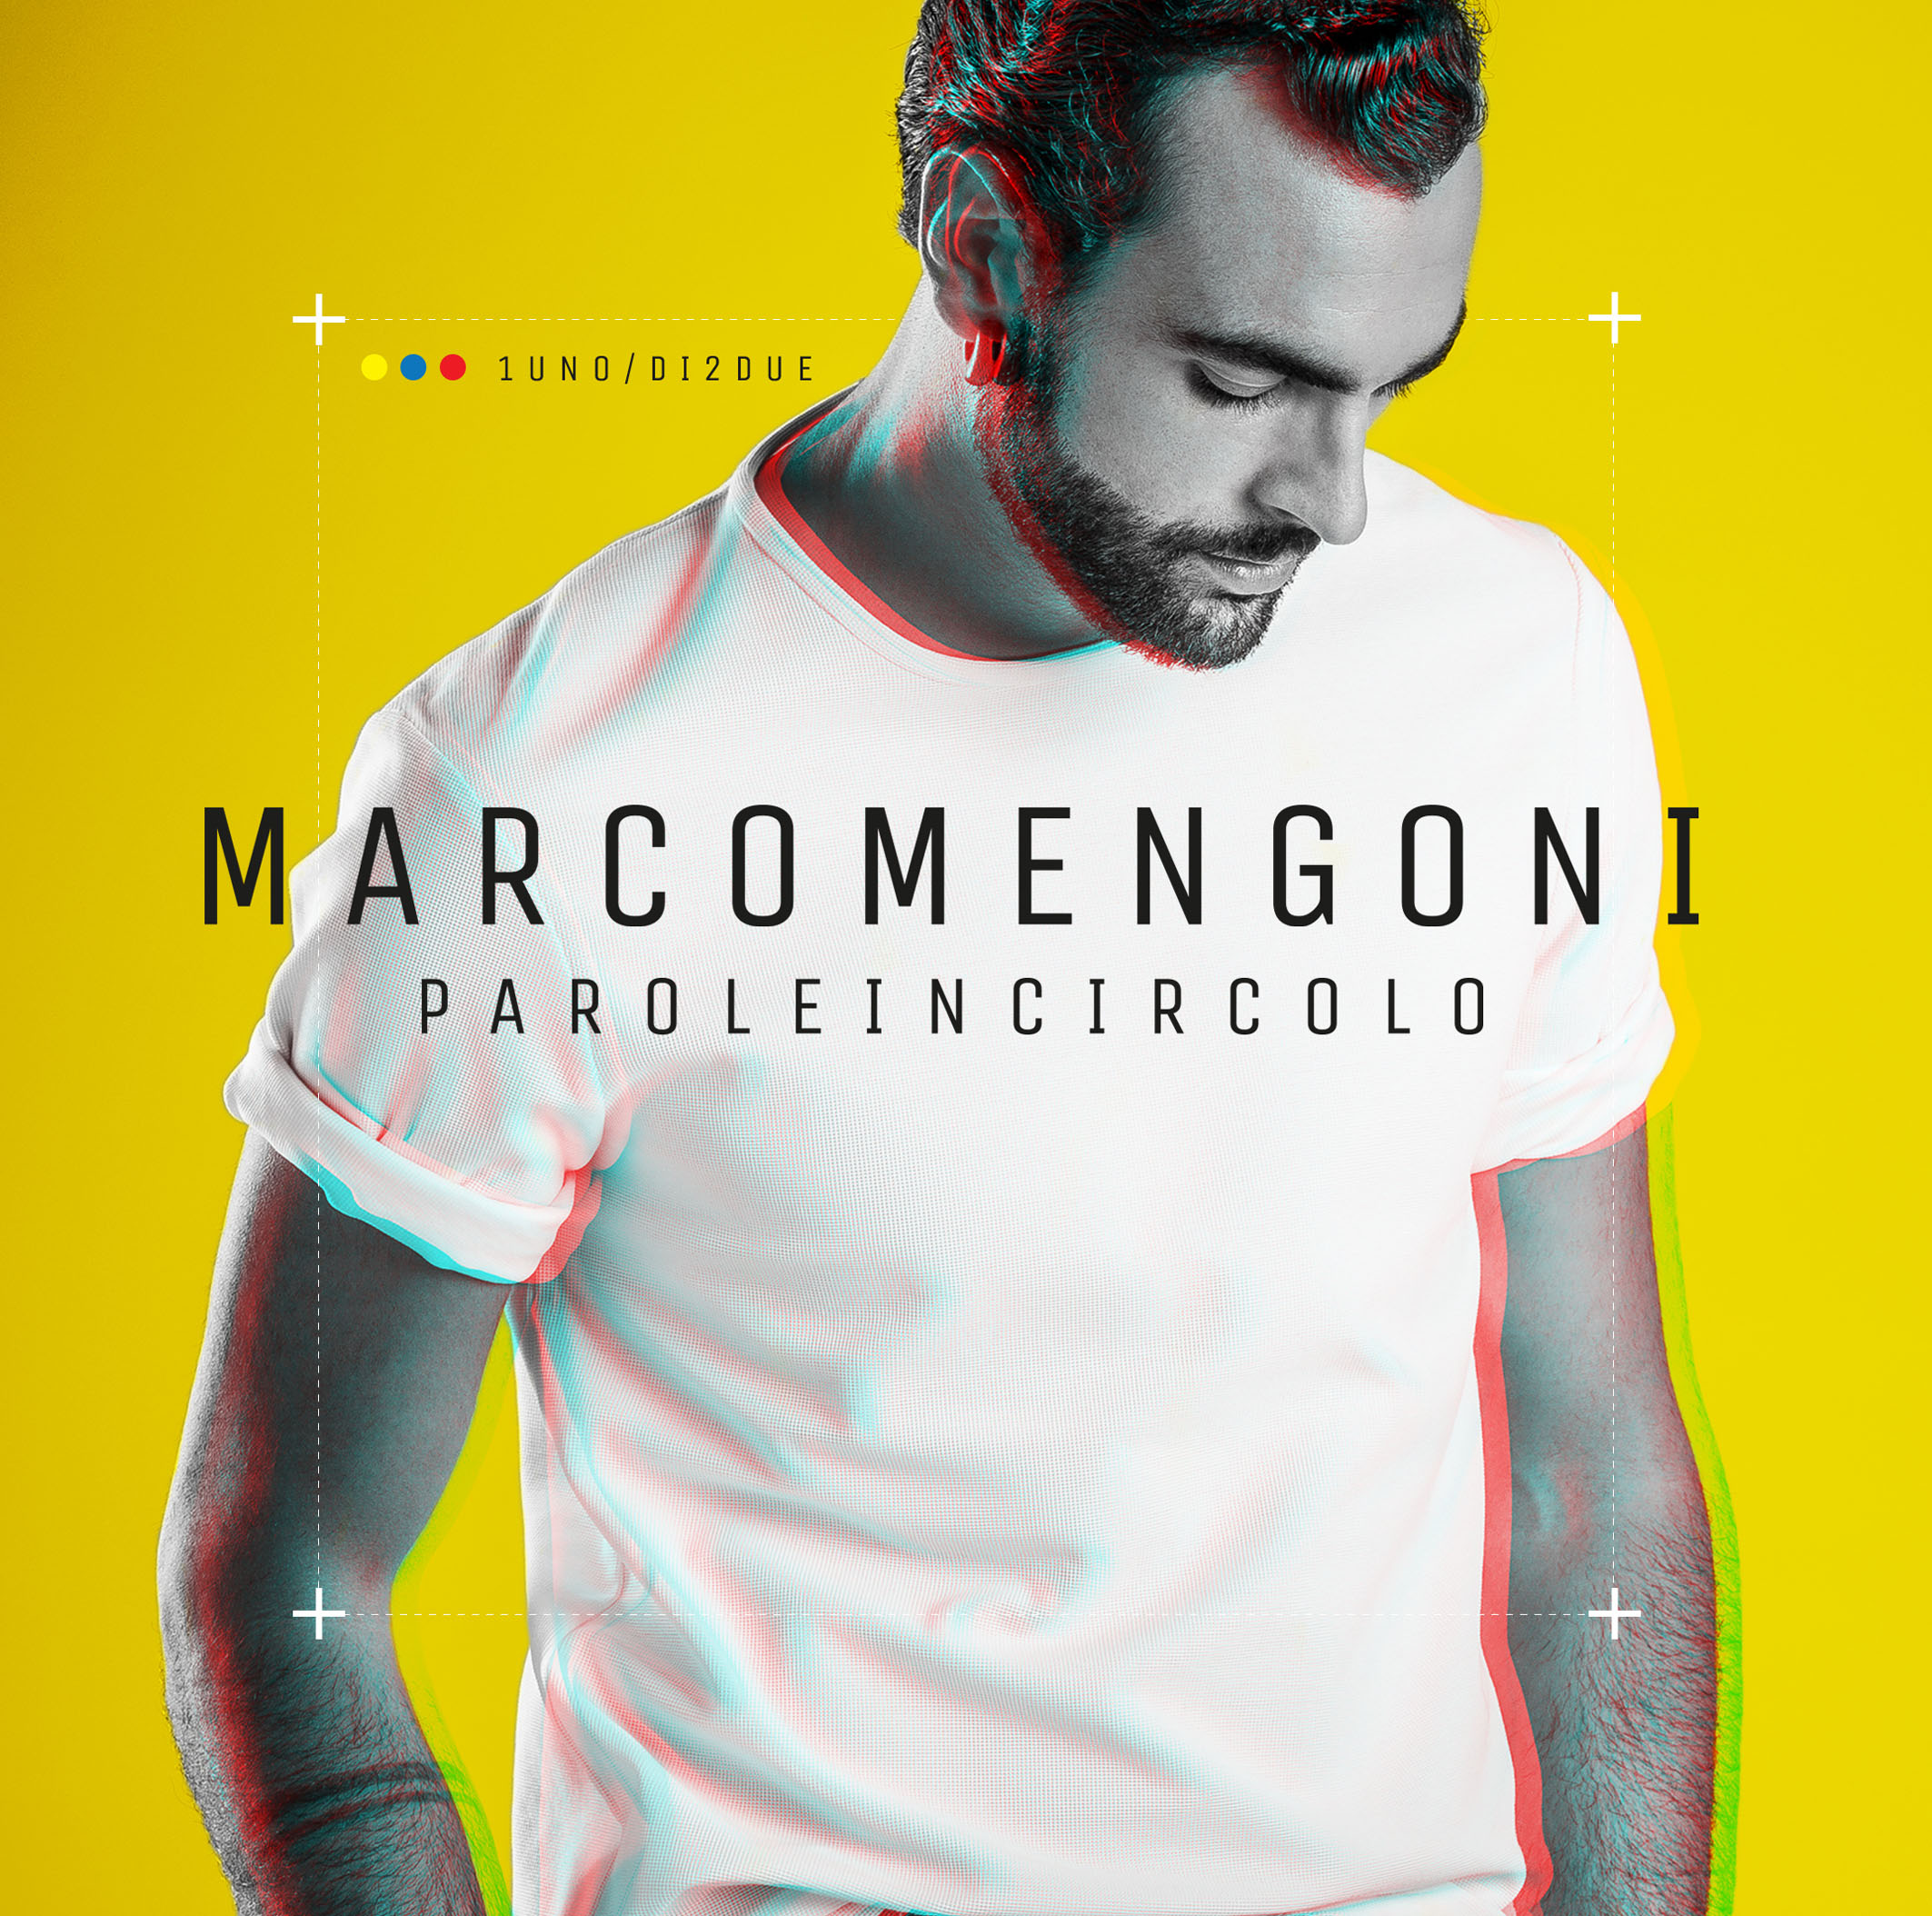  Il 5 maggio 2015 a Mantova debutta il nuovo tour di Marco Mengoni